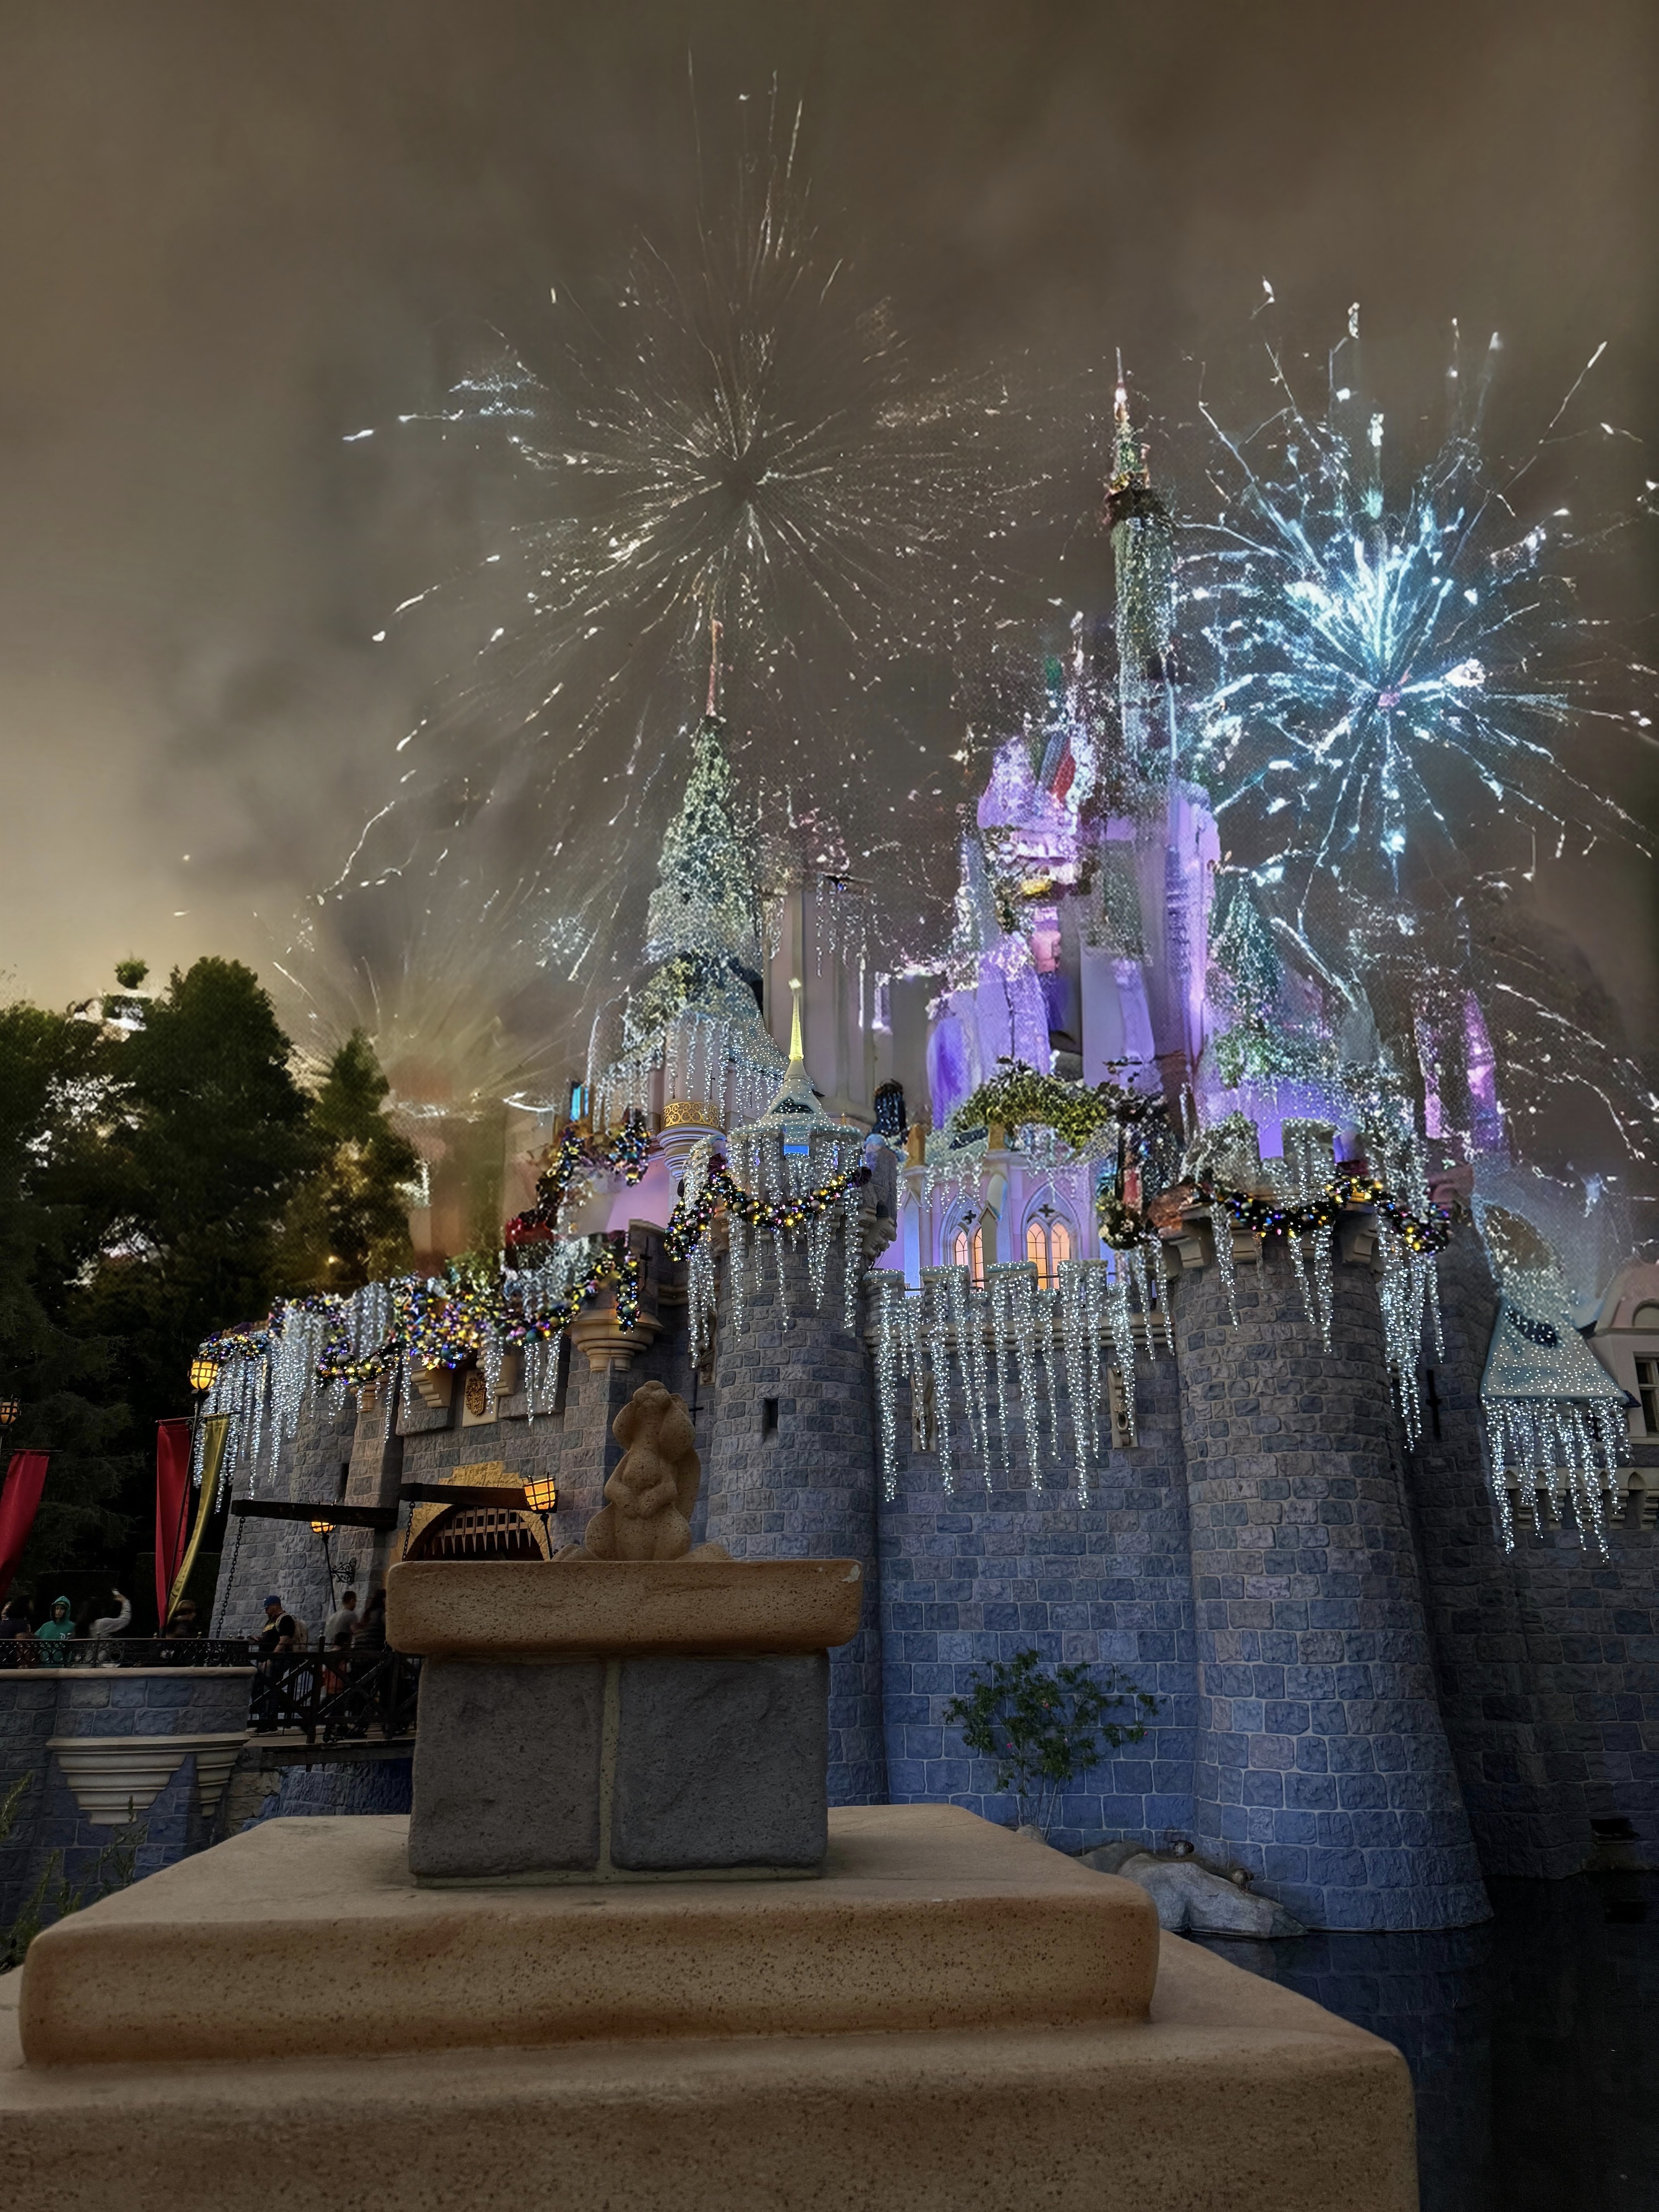 使用Google Pixel 8上的魔术编辑器编辑的迪士尼乐园睡美人城堡的照片。